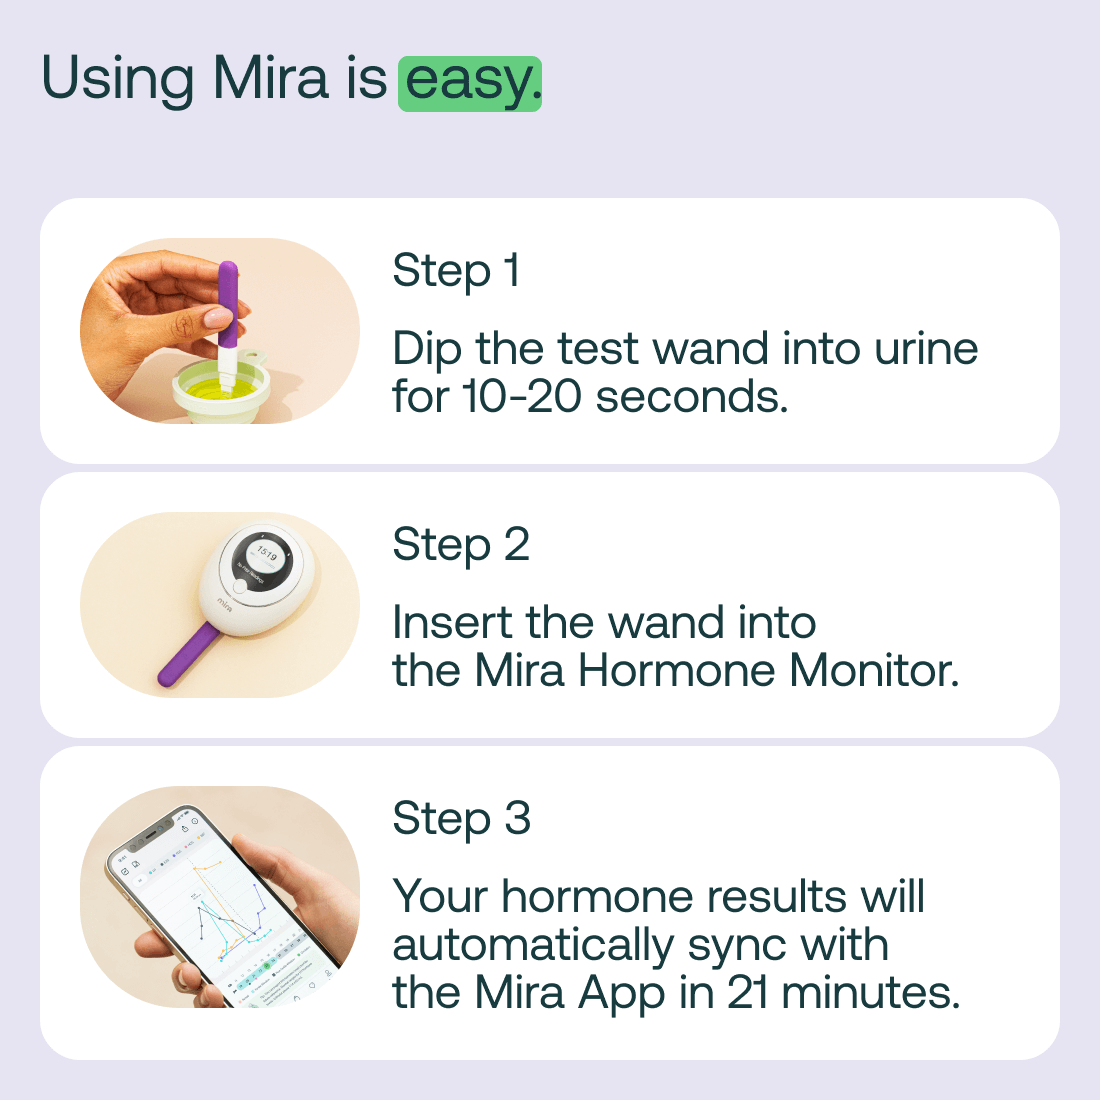 Mira Hormone Monitor: Max Kit